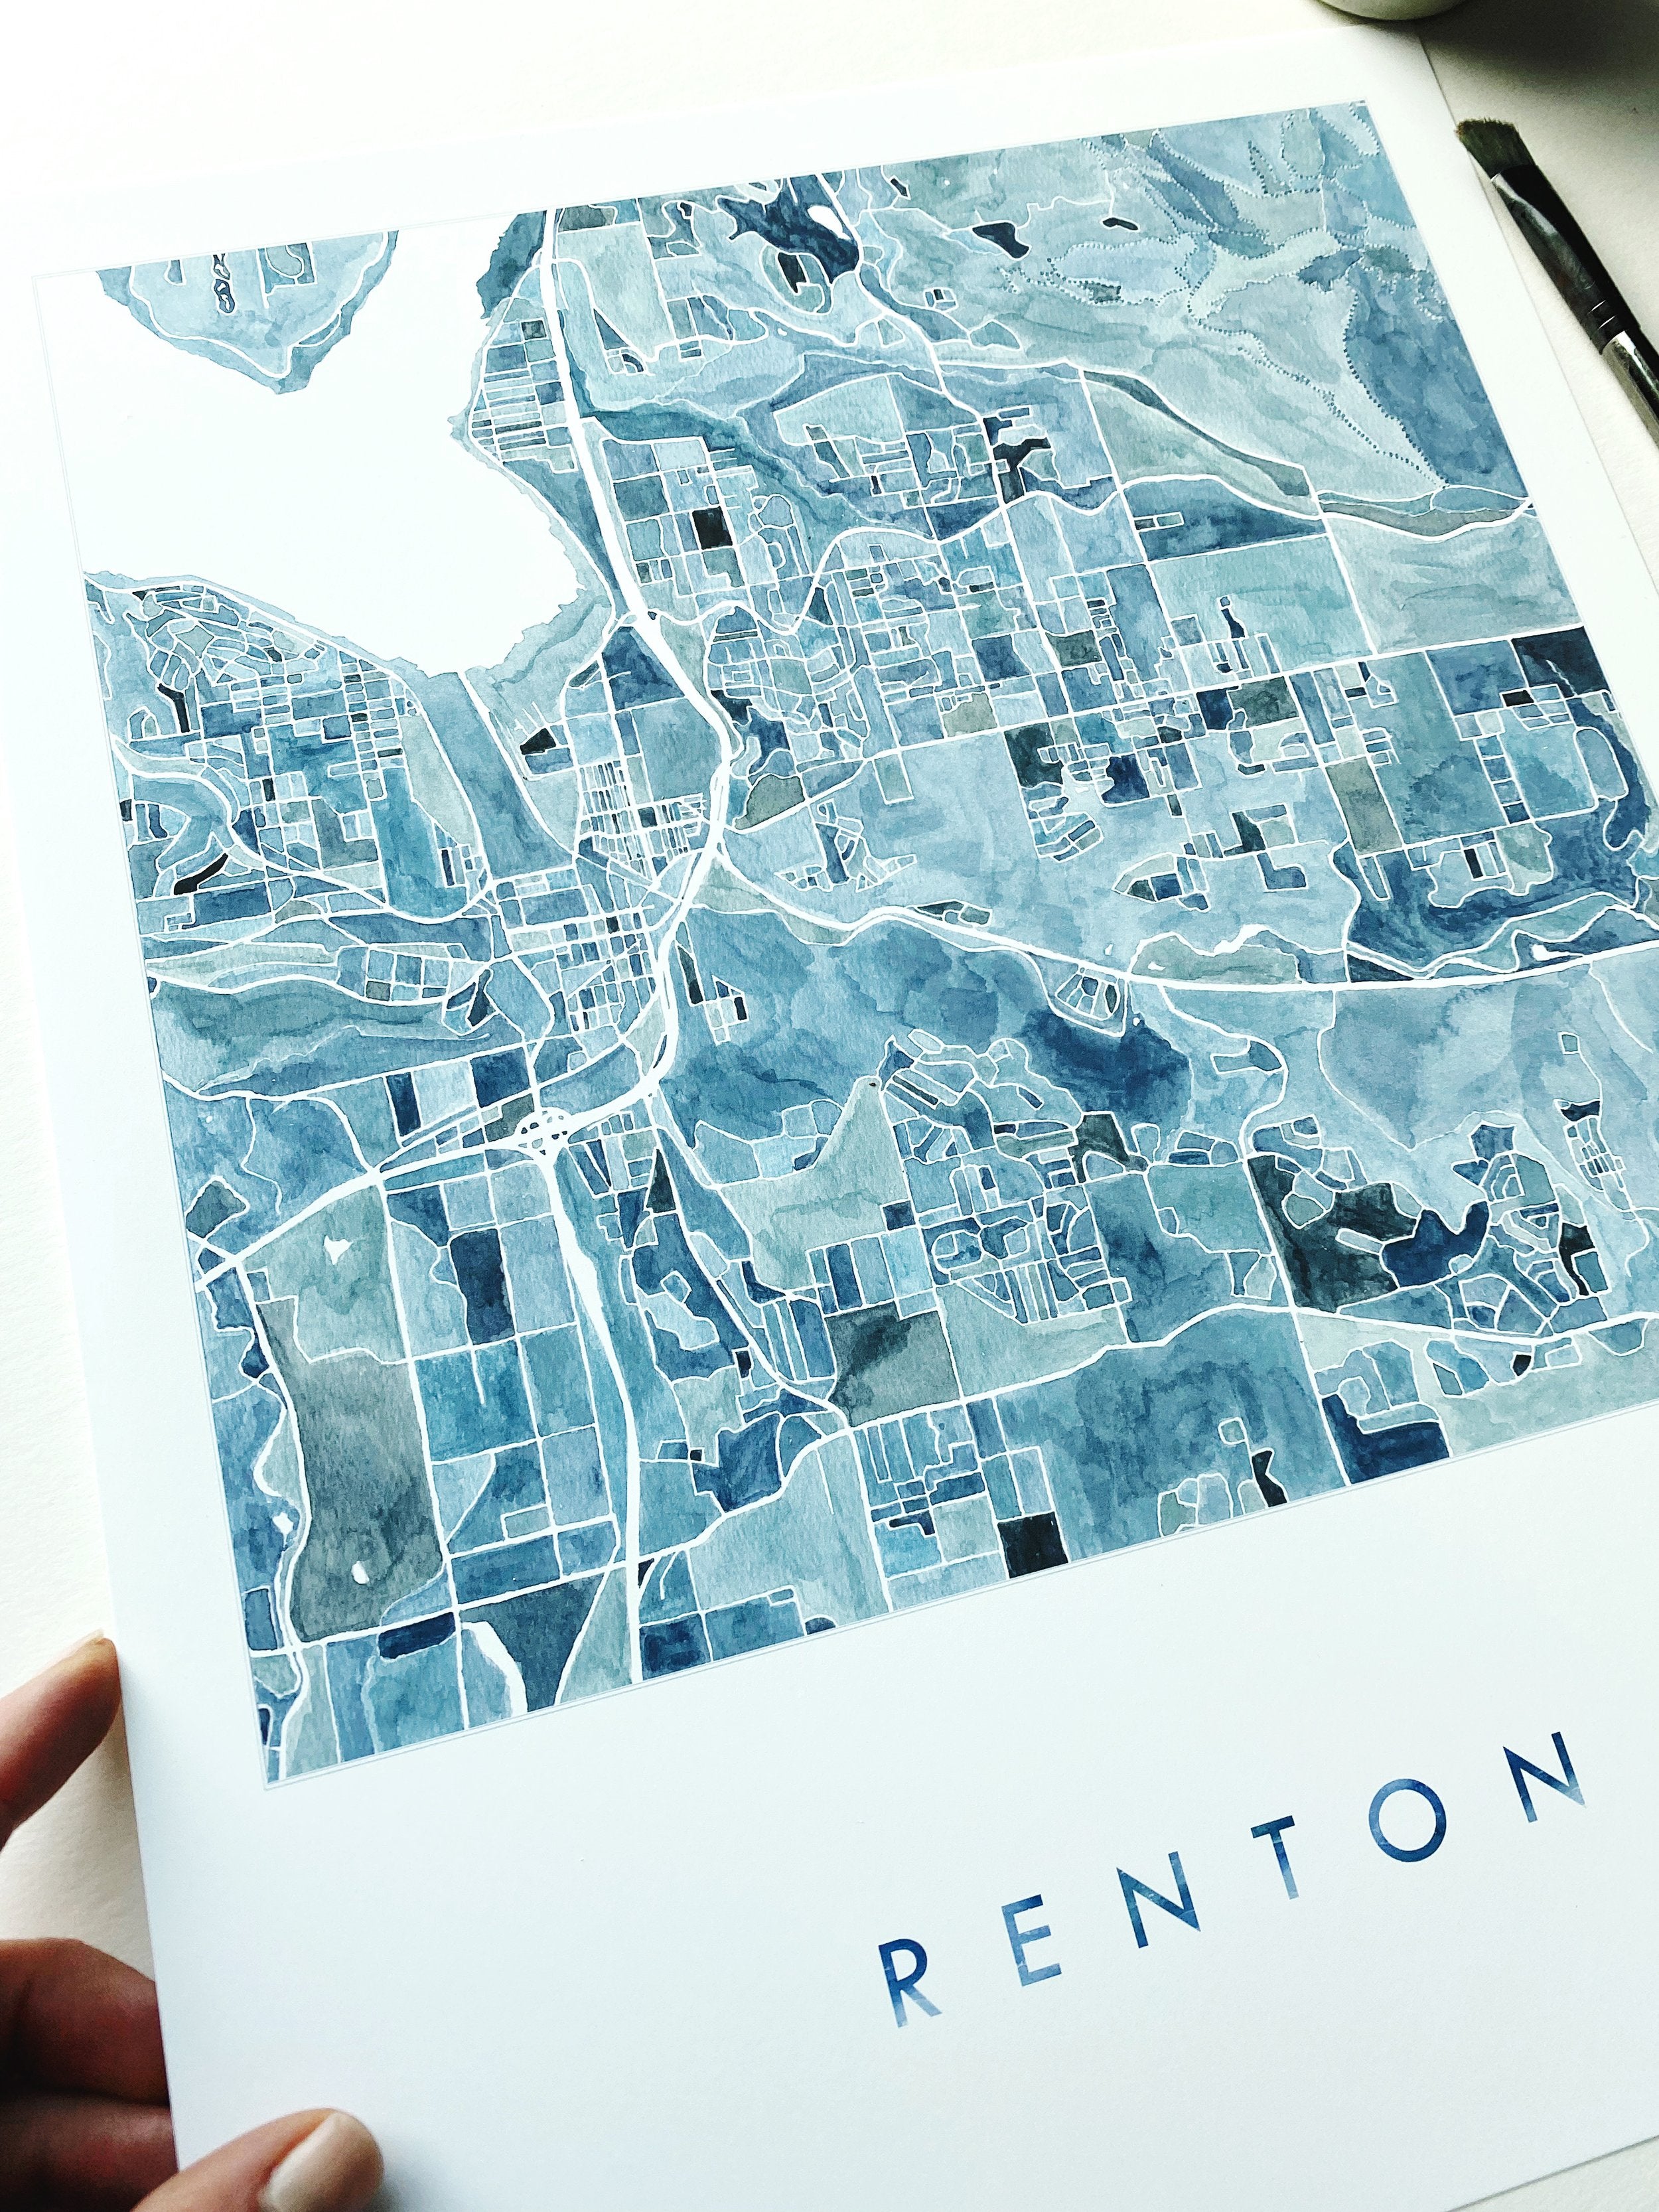 RENTON Watercolor City Blocks Map: PRINT